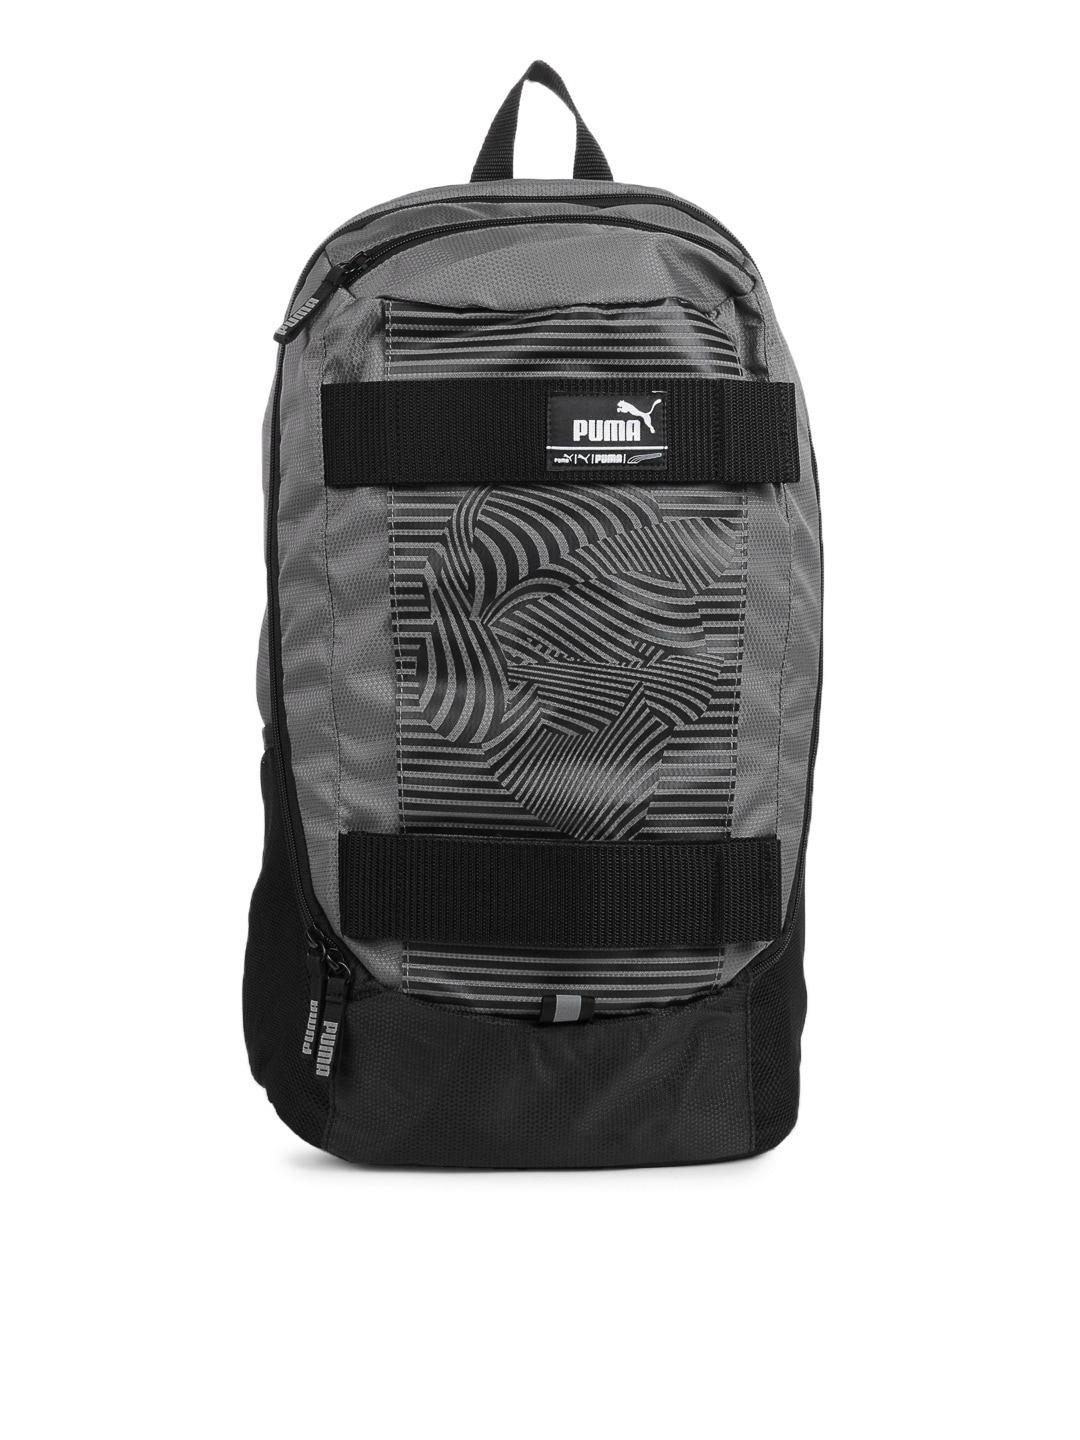 Puma Unisex Grey Backpack